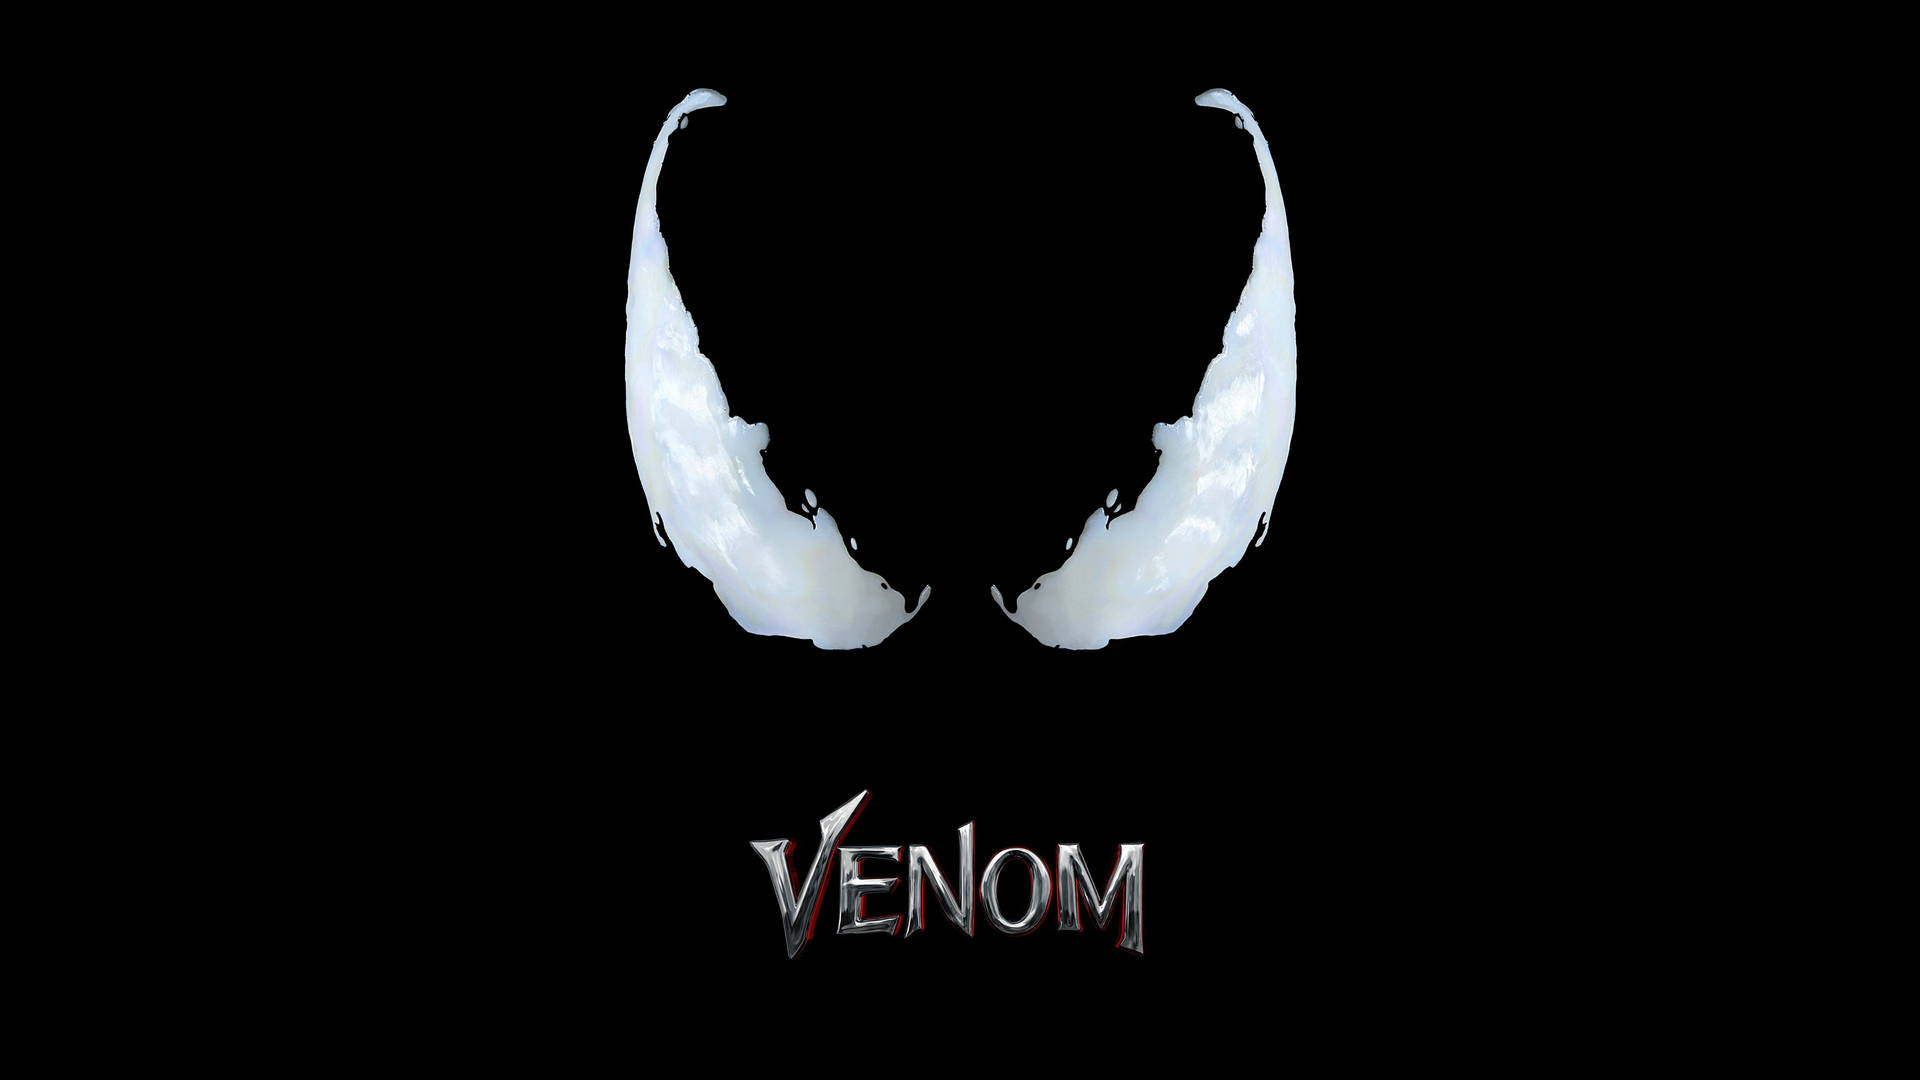 Venom From Marvel Eyes Background